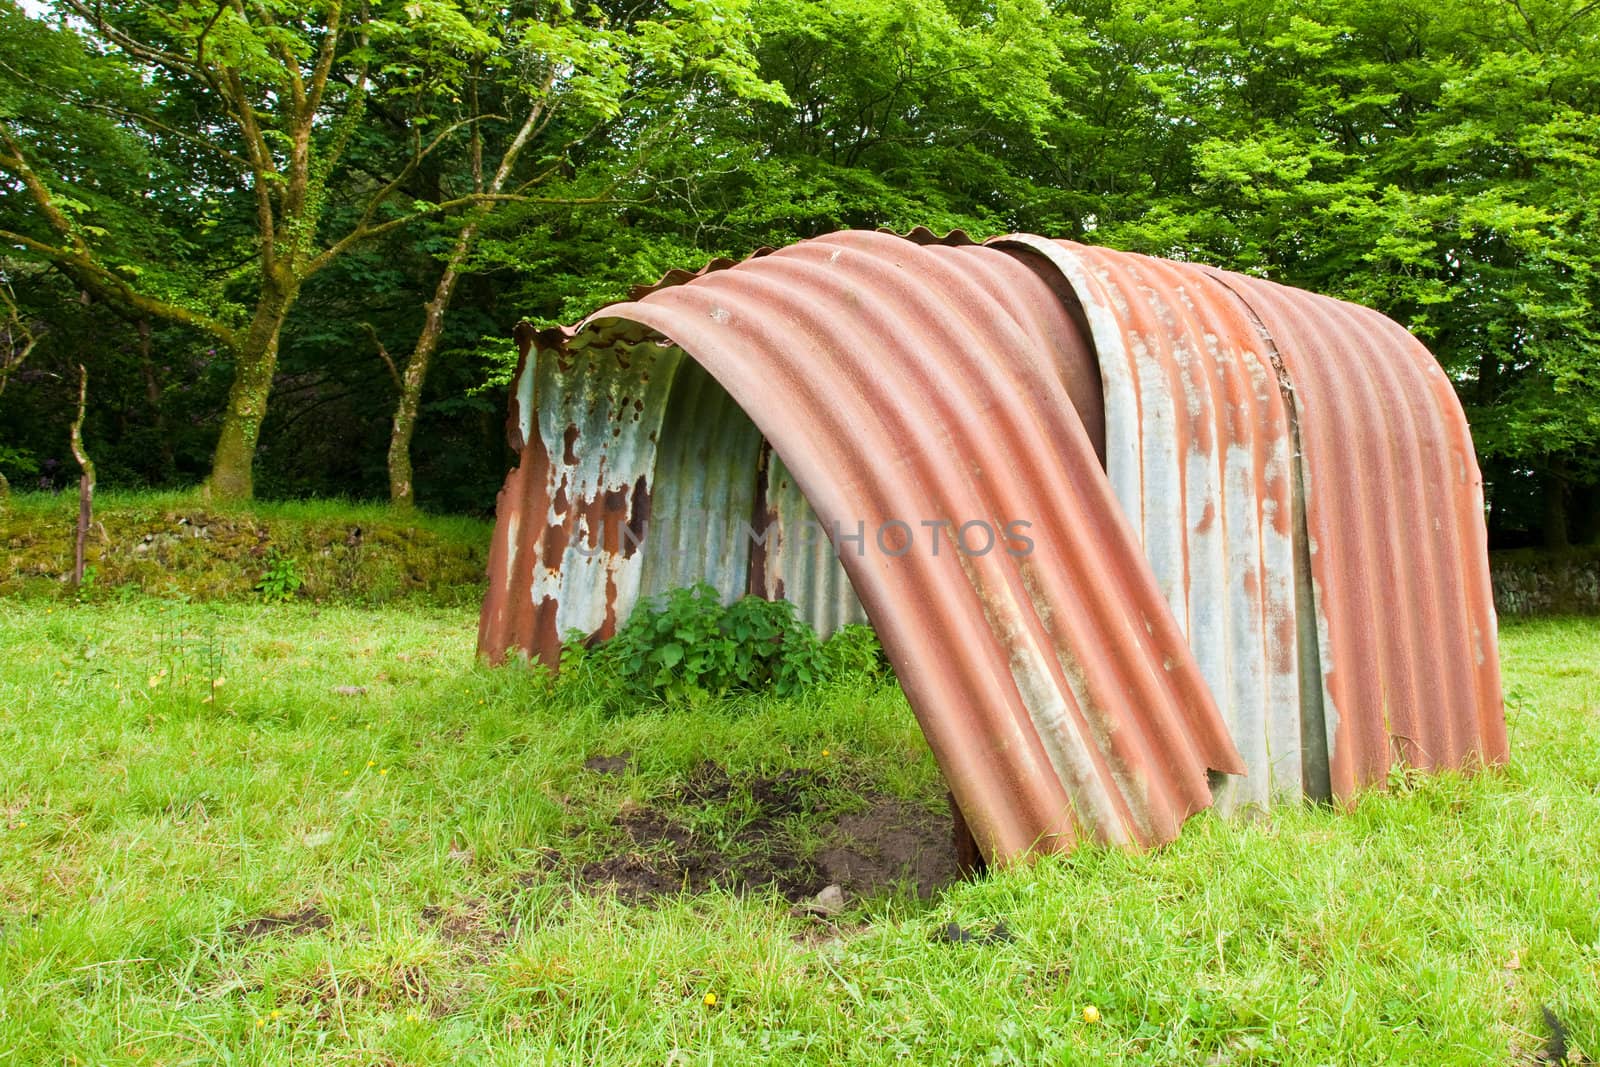 An old rusty pig farm hut